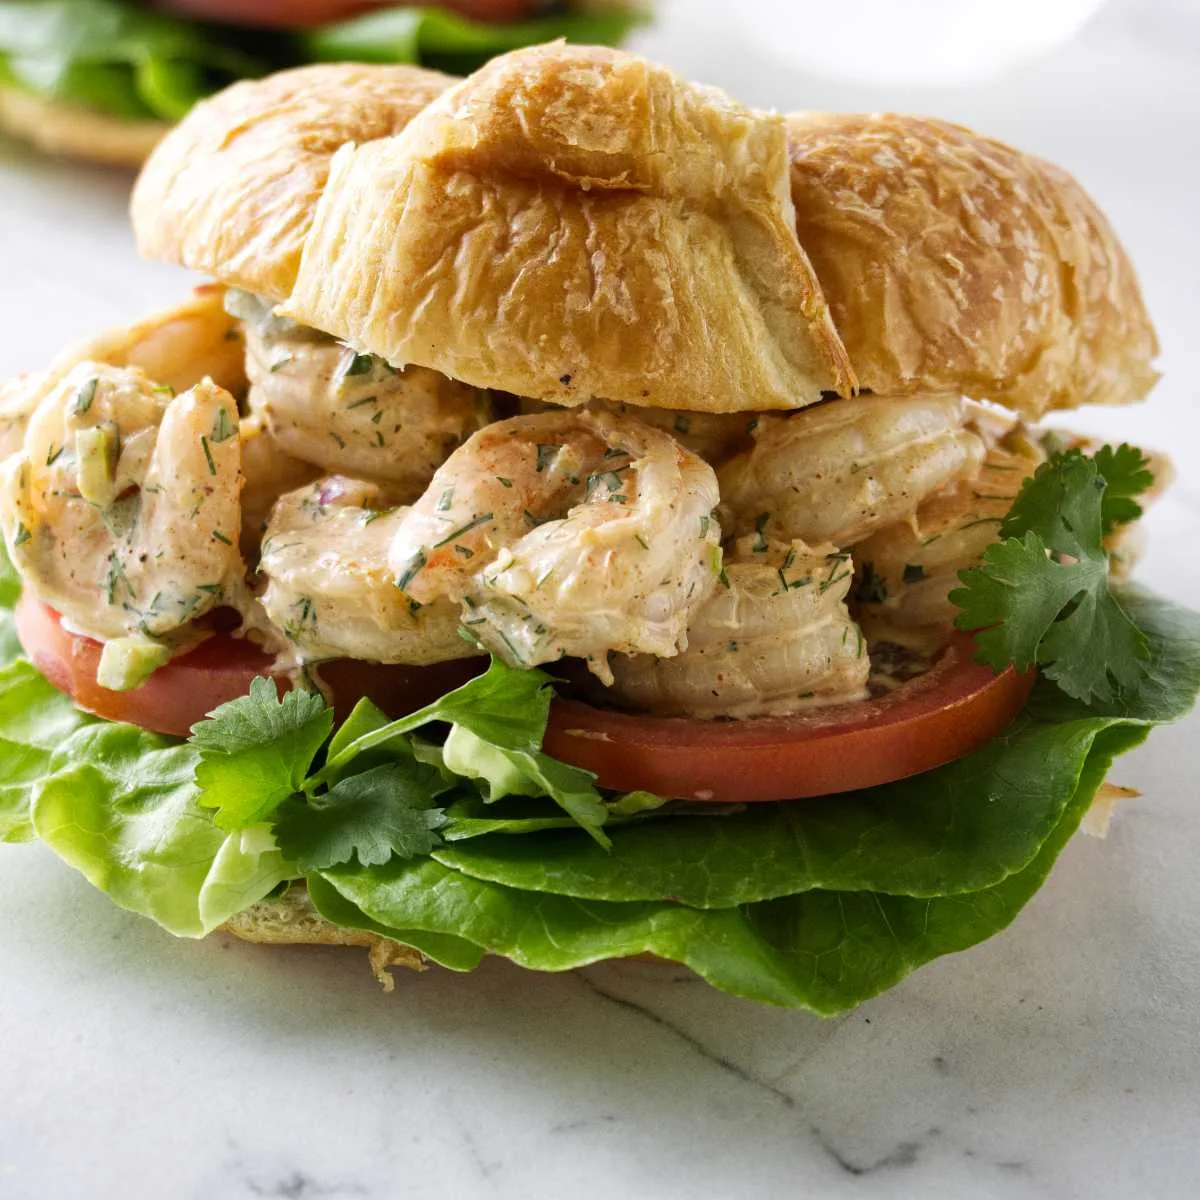 A shrimp salad sandwich on a croissant.